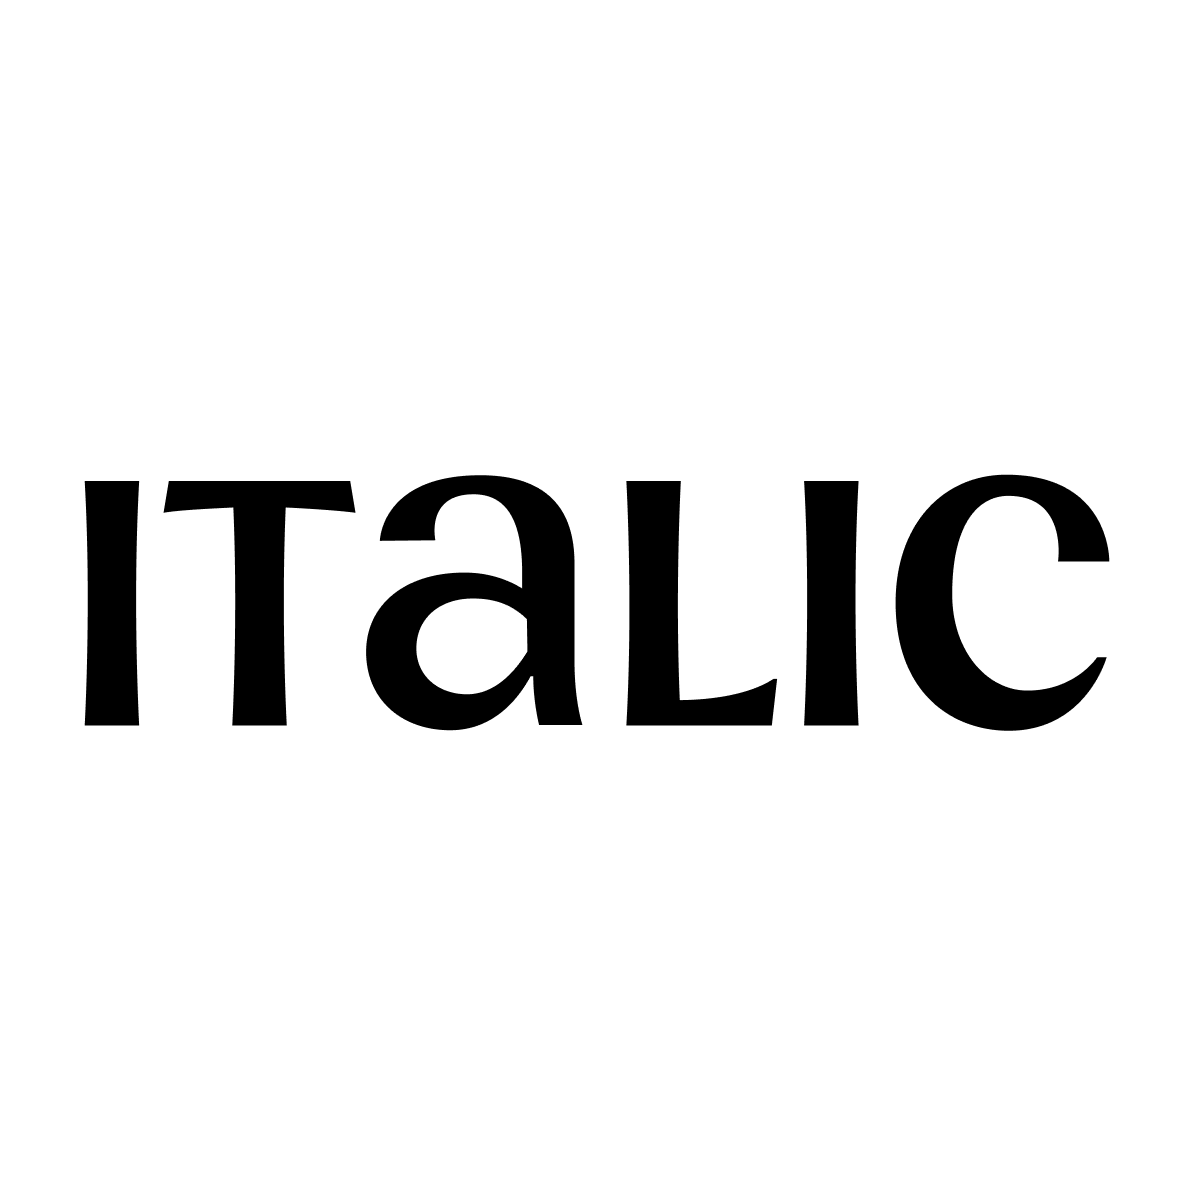 Italic Logo - Italic logo